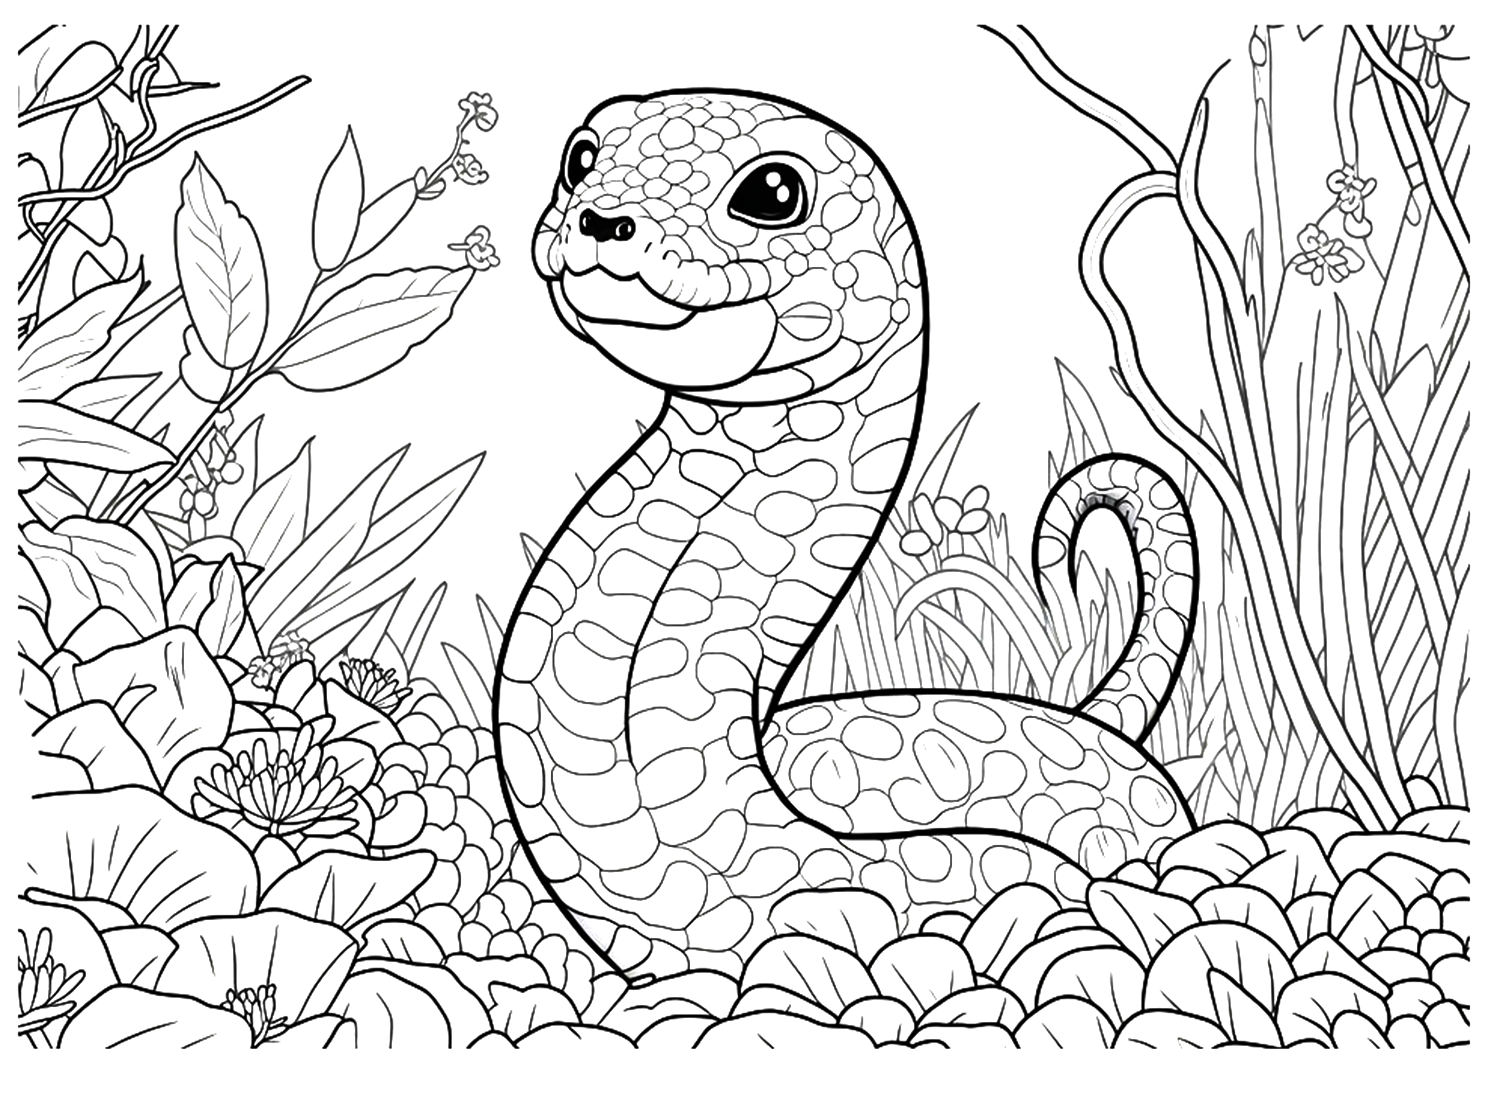 Simpatico foglio da colorare di Python da Python